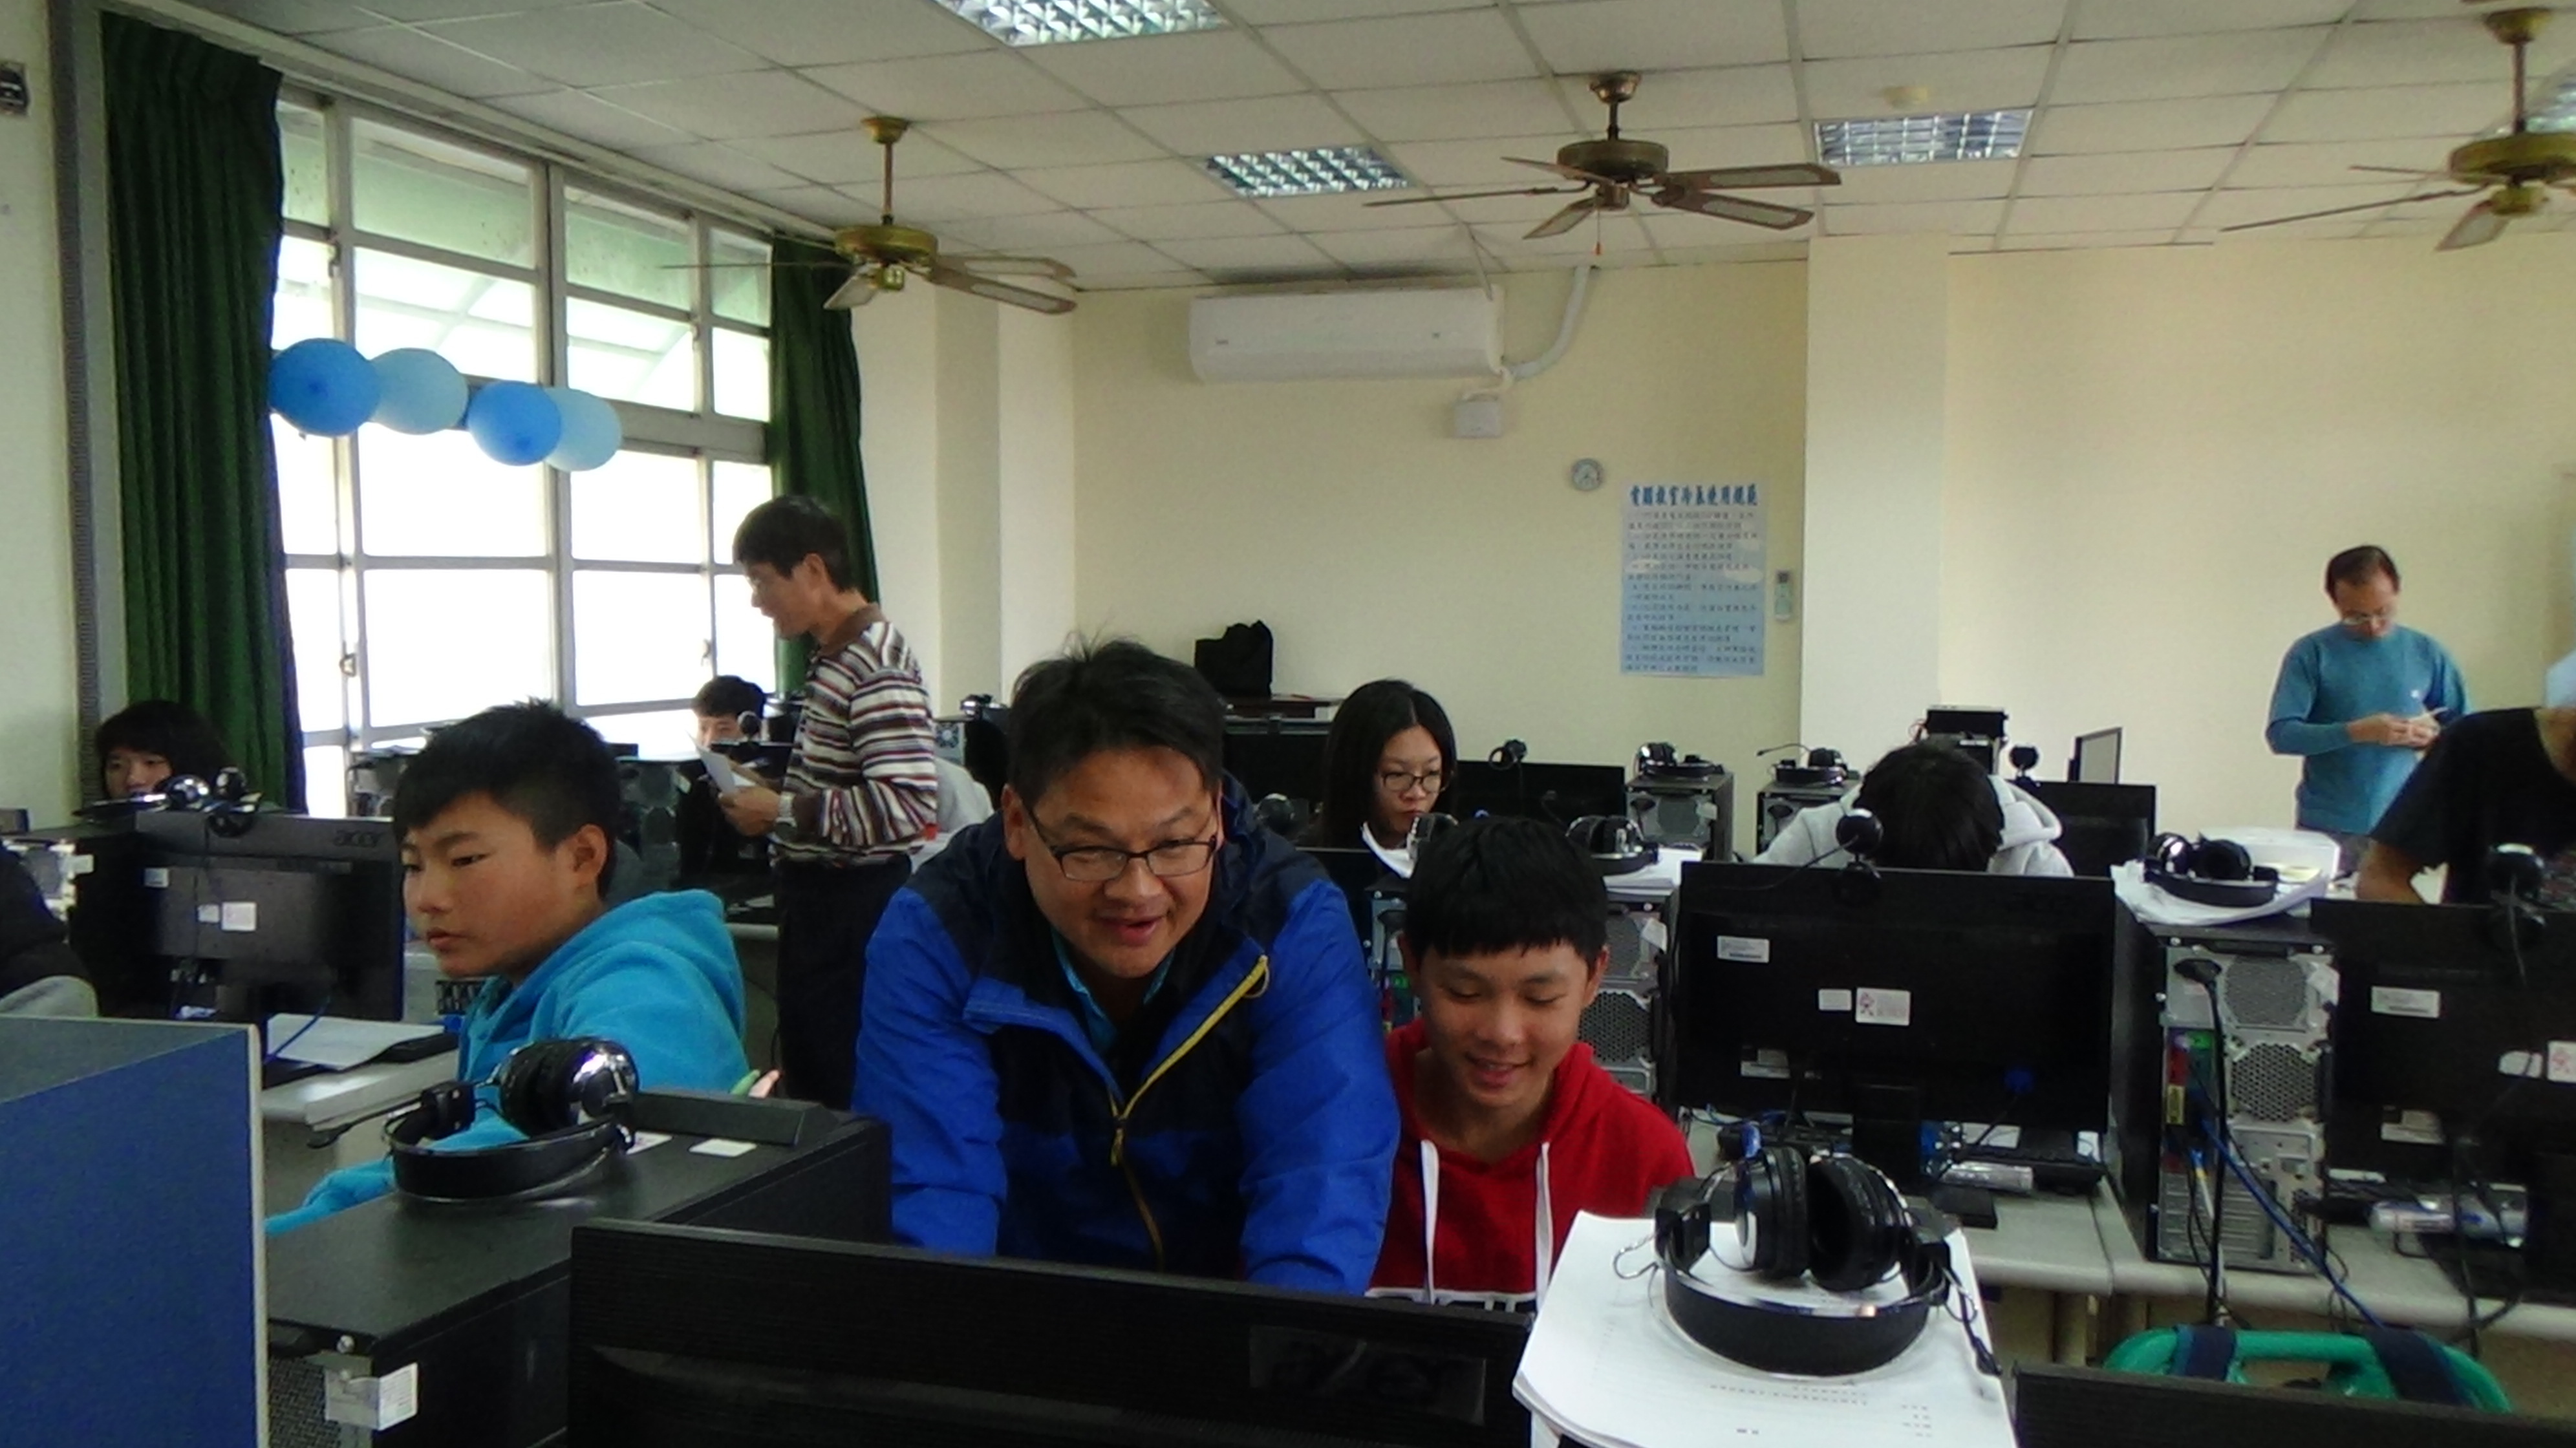 臺中市立東勢高工林偉政主任、詹晉榮老師指導學生安裝軟體，學習應用程式，學生興趣盎然。